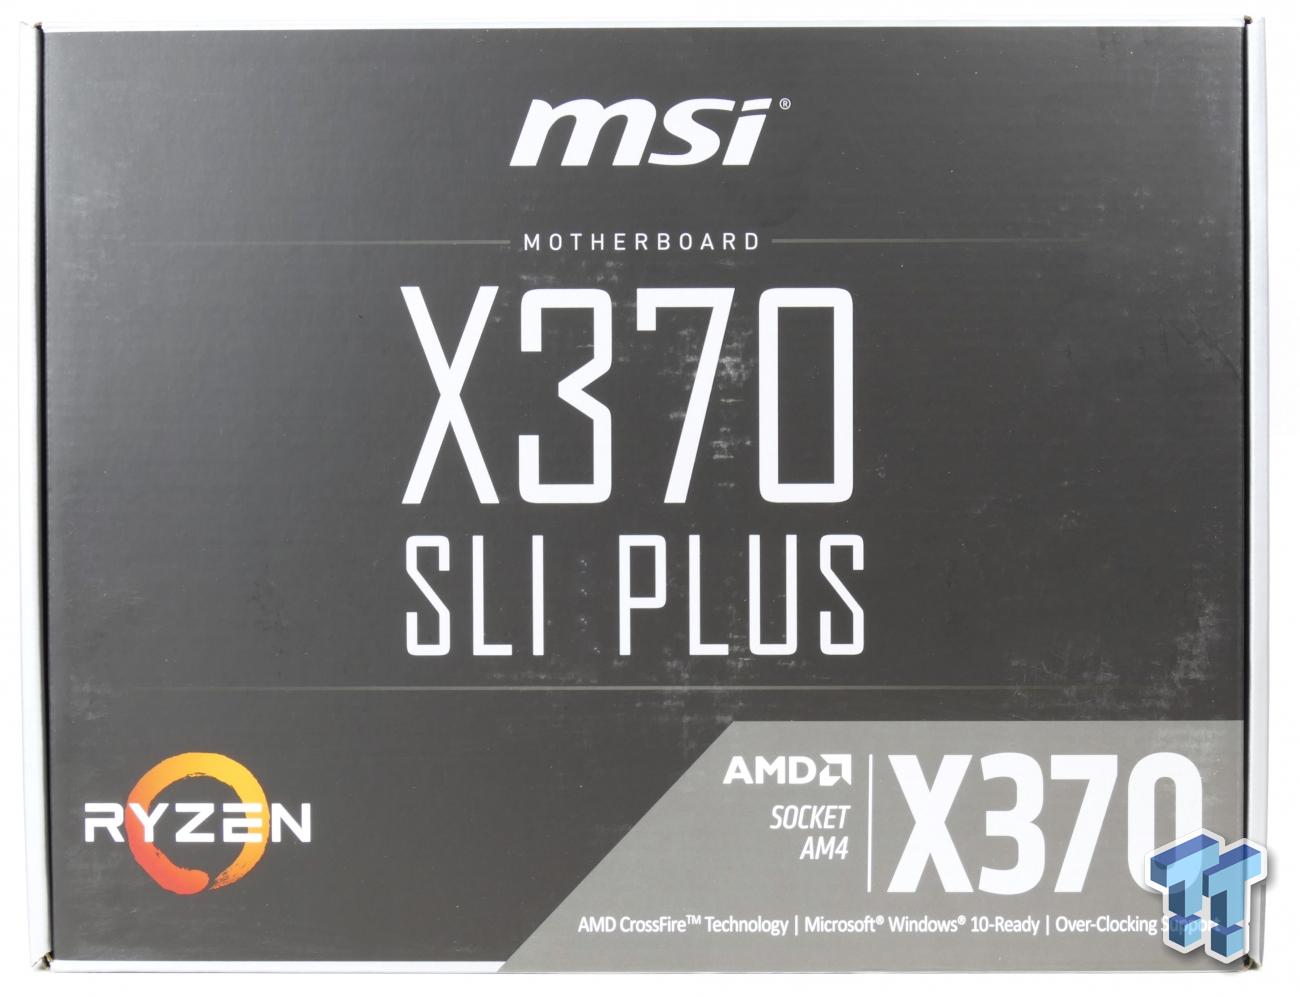 MSI X370 SLI PLUS Gaming Motherboard Review